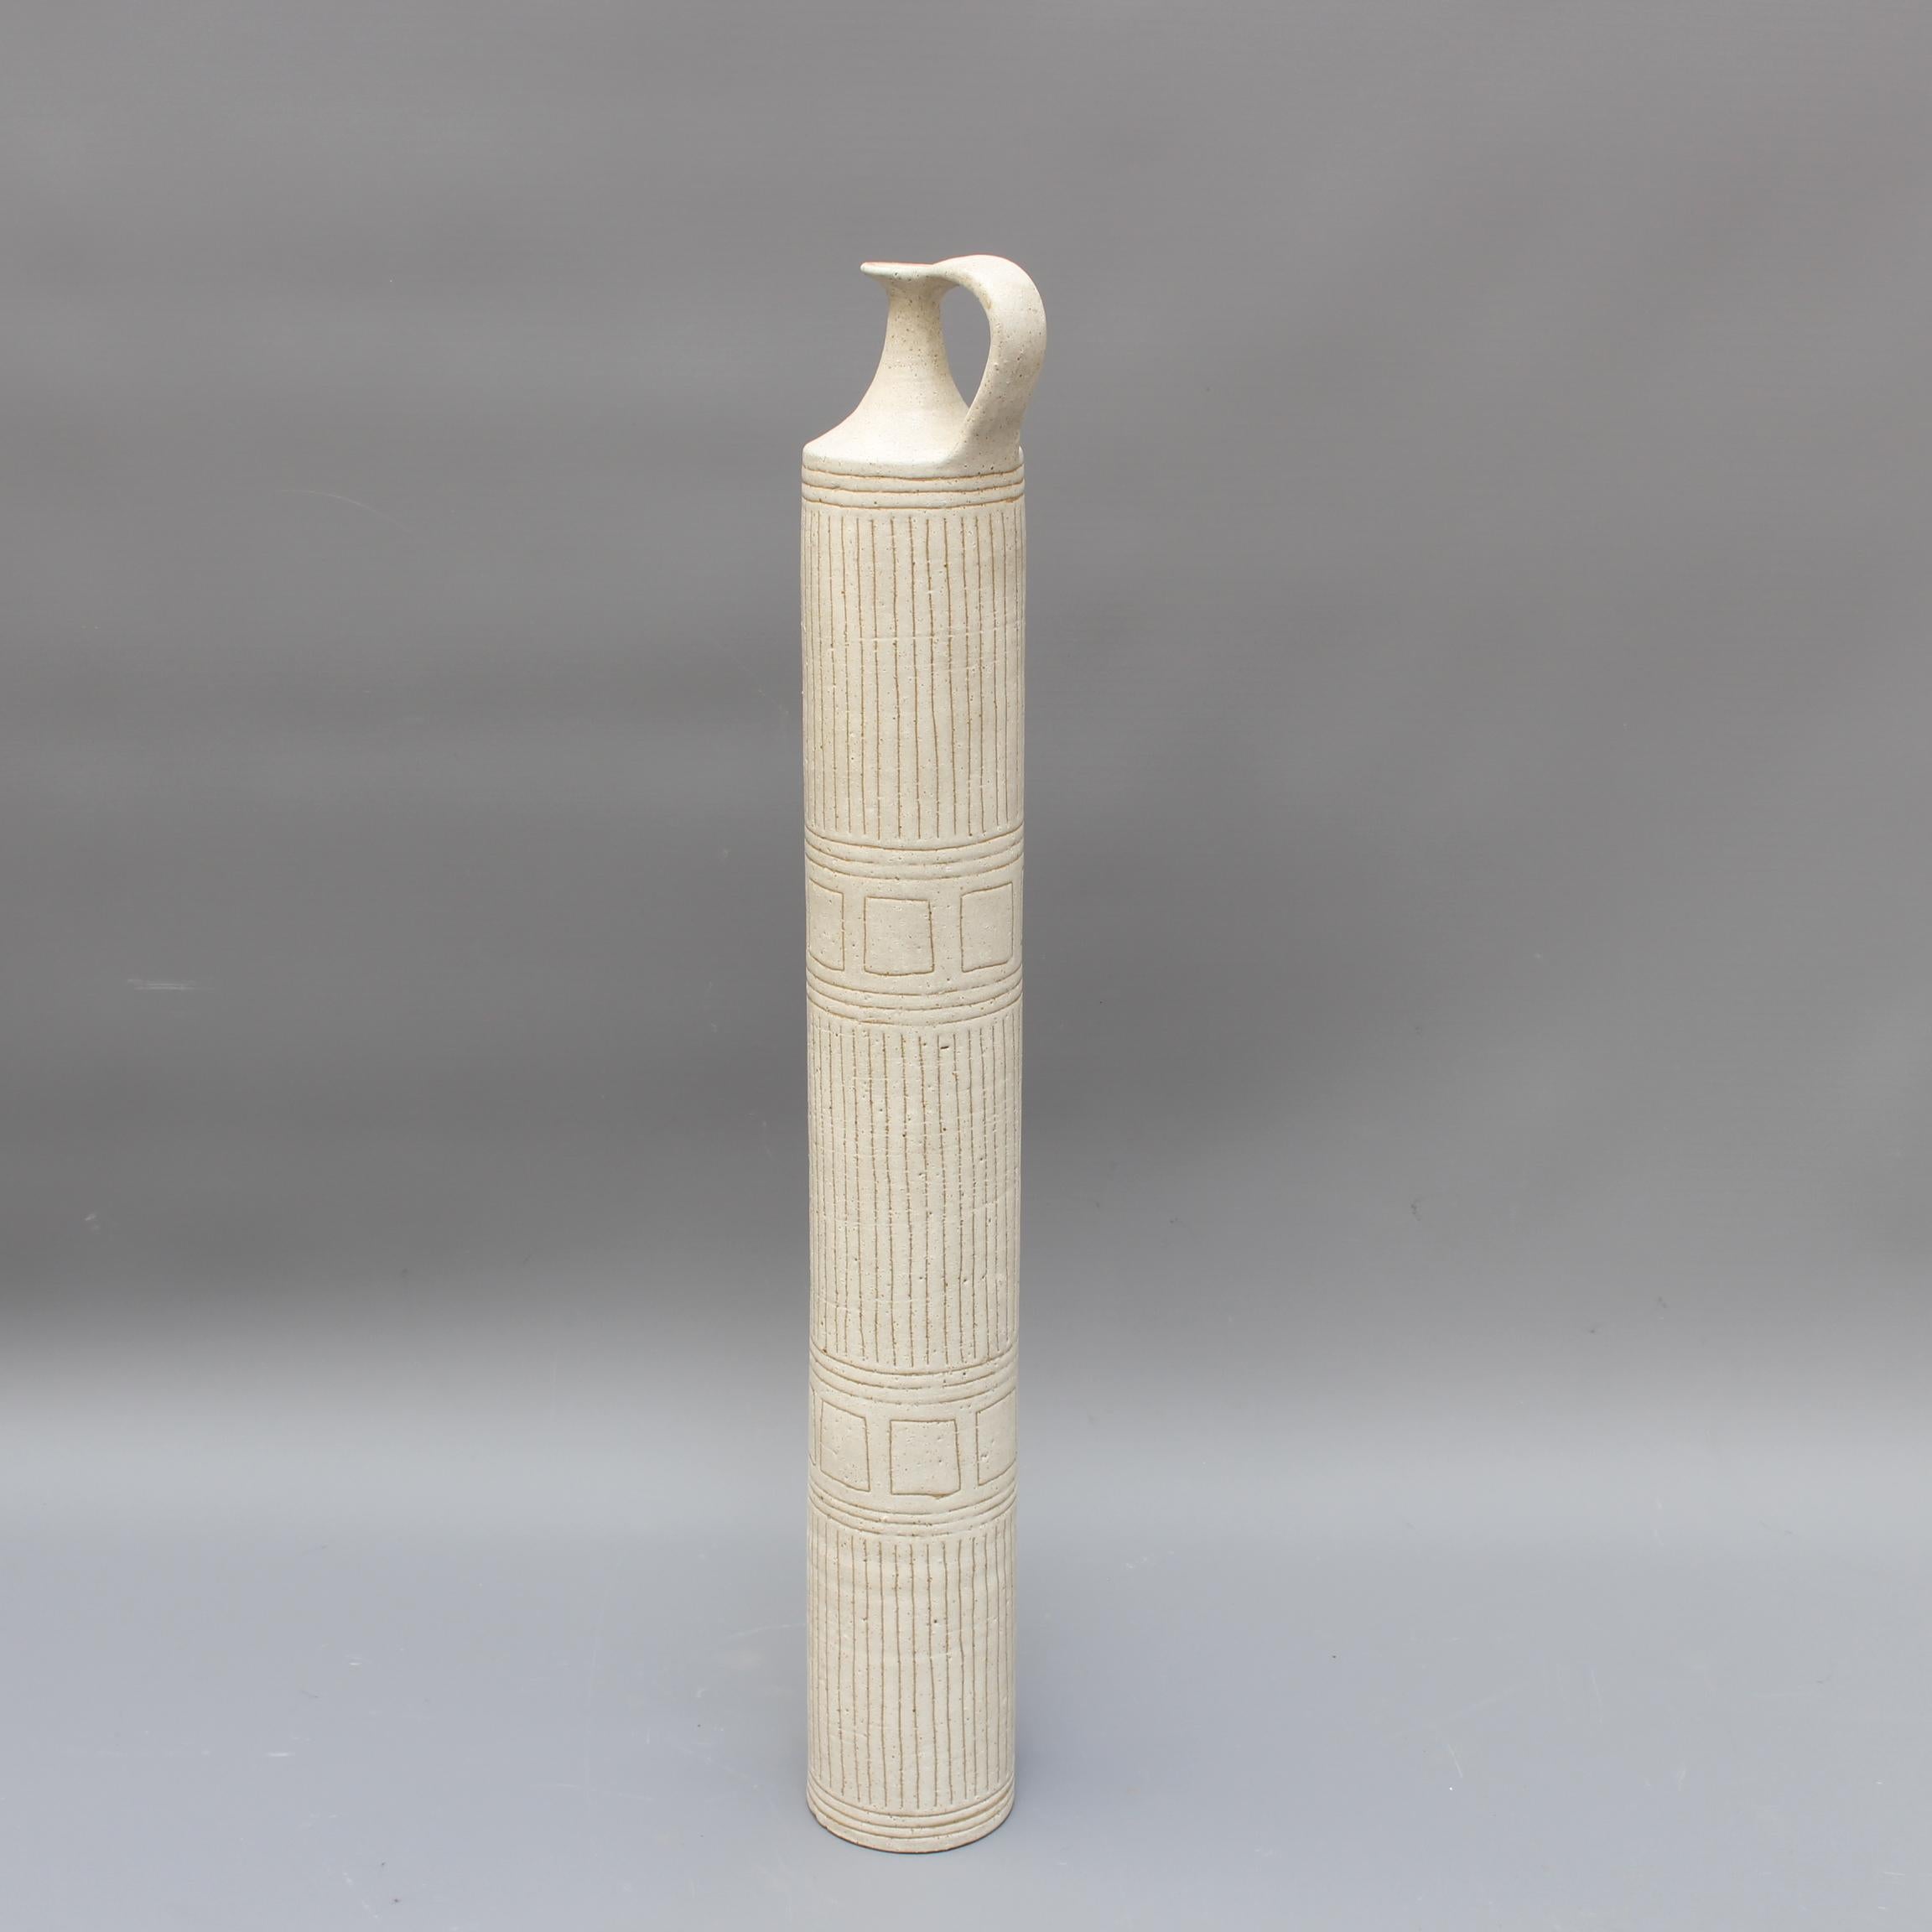 Superbe vase cylindrique en céramique avec une seule anse de style Amphora et un motif Eleg sur une élégante surface en faïence beige, par Bruno Gambone (vers les années 1970). Ce vase décoratif, à la fois substantiel et gracieusement allongé, est